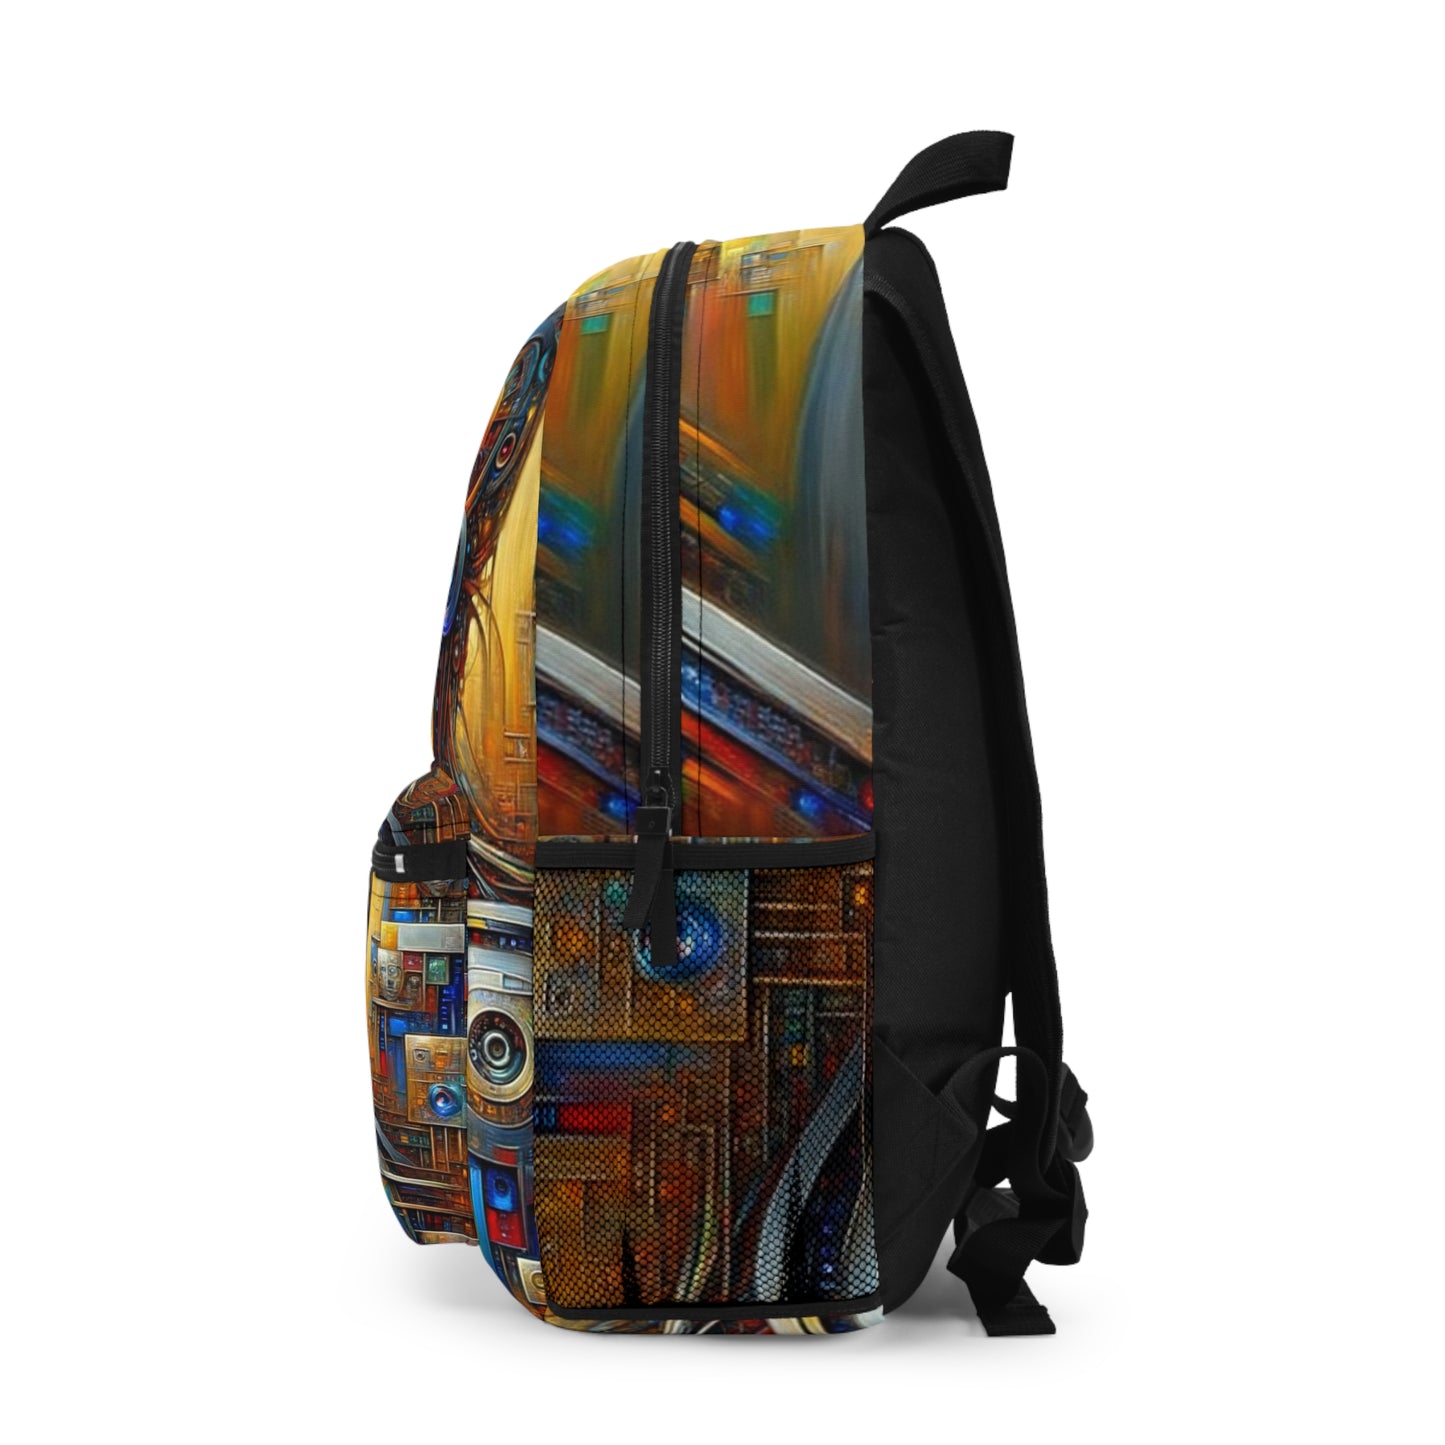 TechnoGenesis - Backpack